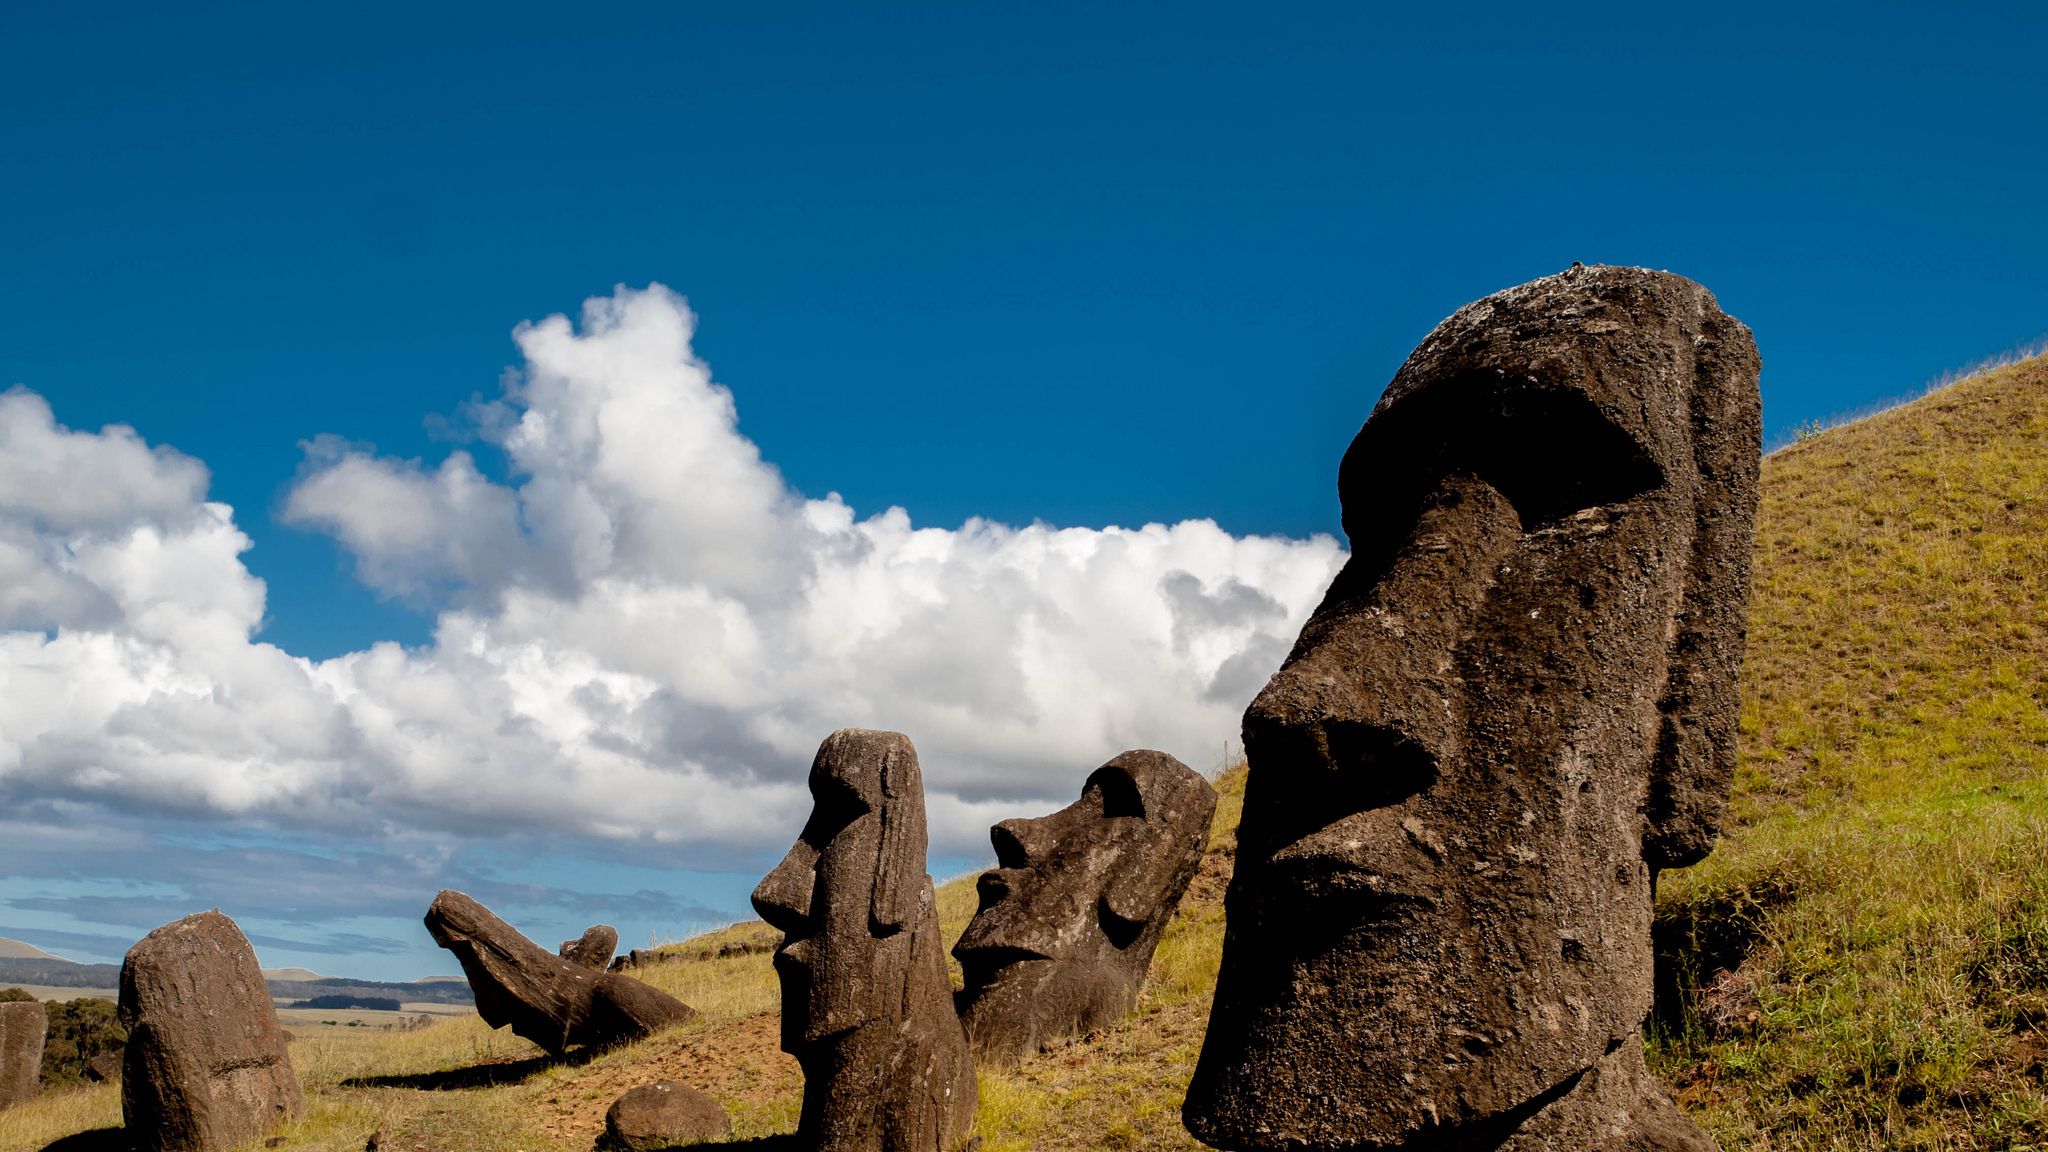 Идол скульптура. Остров Пасхи статуи Моаи. Каменные статуи Моаи остров Пасхи Чили. Моаи (статуи острова Пасхи), Чили. Истуканы Рапа-Нуи остров Пасхи.